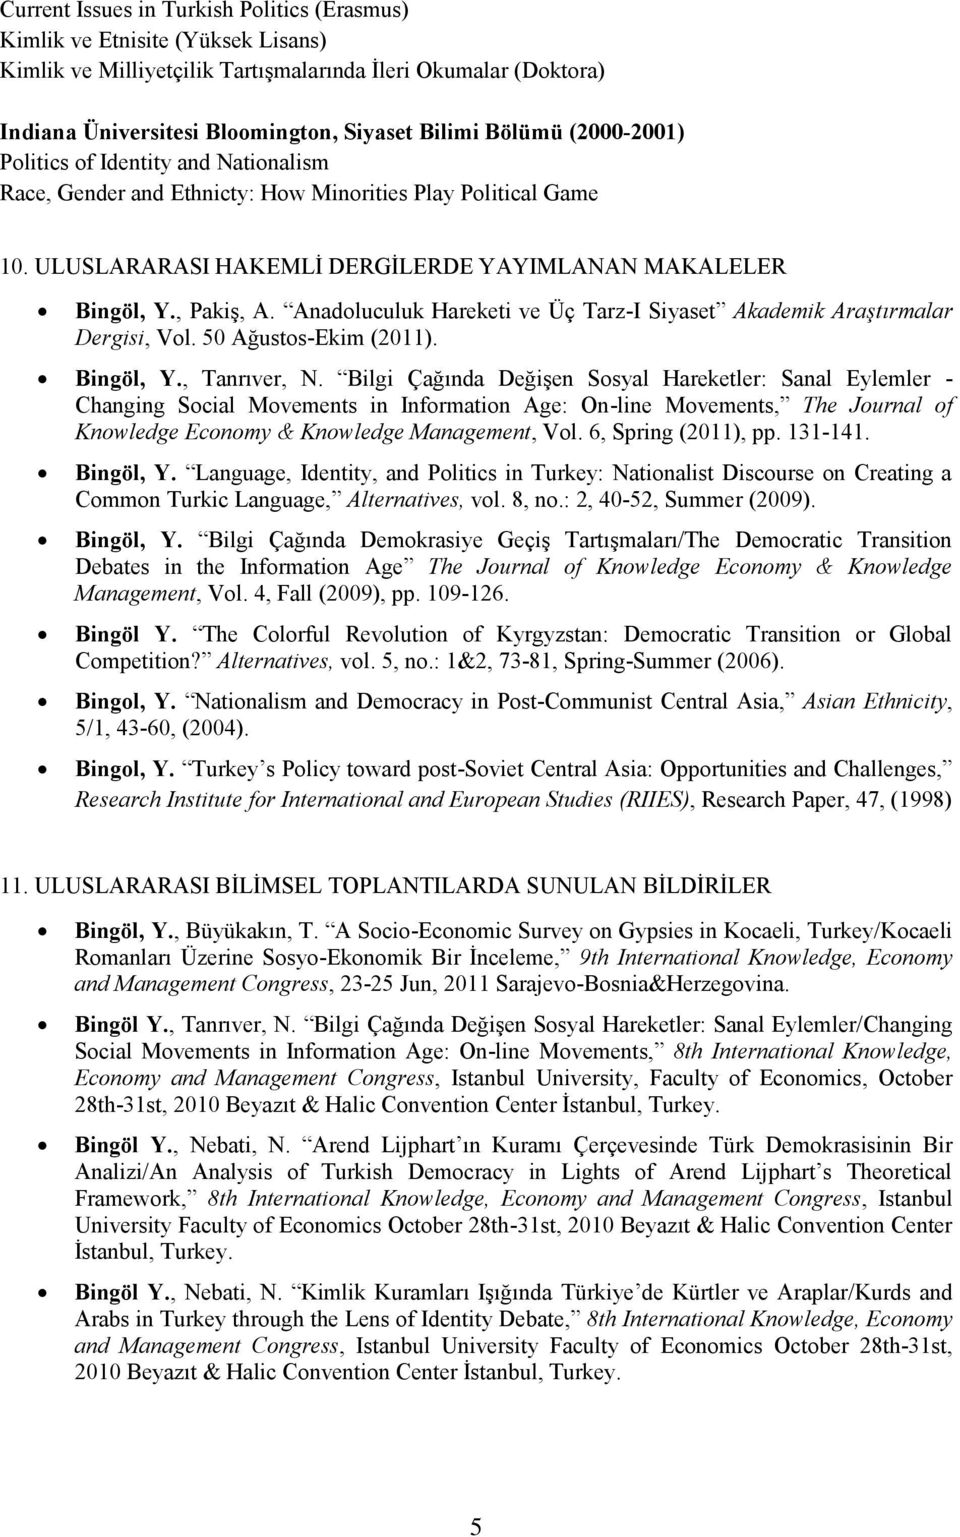 Anadoluculuk Hareketi ve Üç Tarz-I Siyaset Akademik Araştırmalar Dergisi, Vol. 50 Ağustos-Ekim (2011). Bingöl, Y., Tanrıver, N.